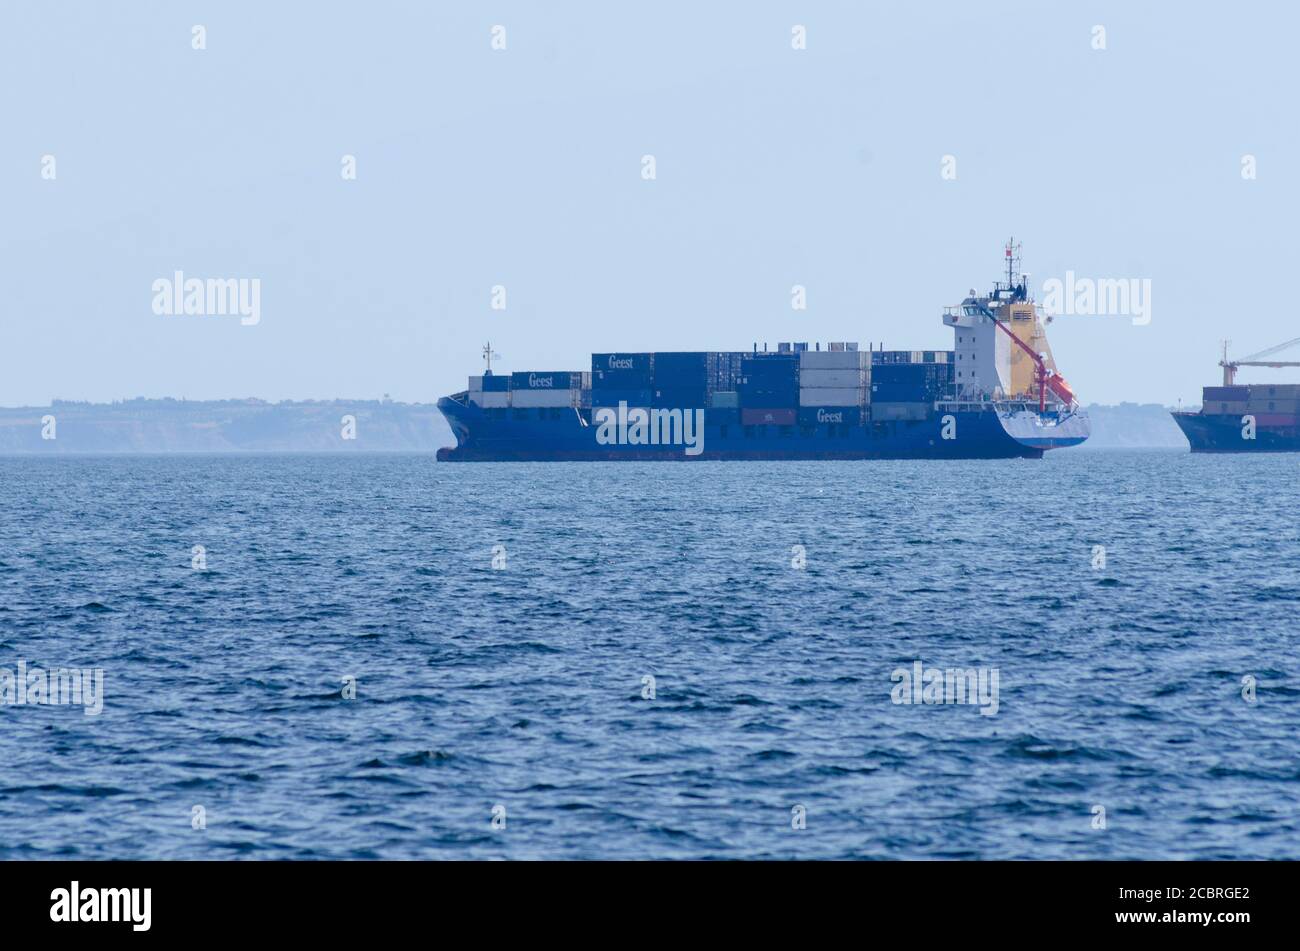 Navires-conteneurs quittant le port de Thessalonique Macédoine Grèce - photo: Geopix/Alay stock photo Banque D'Images